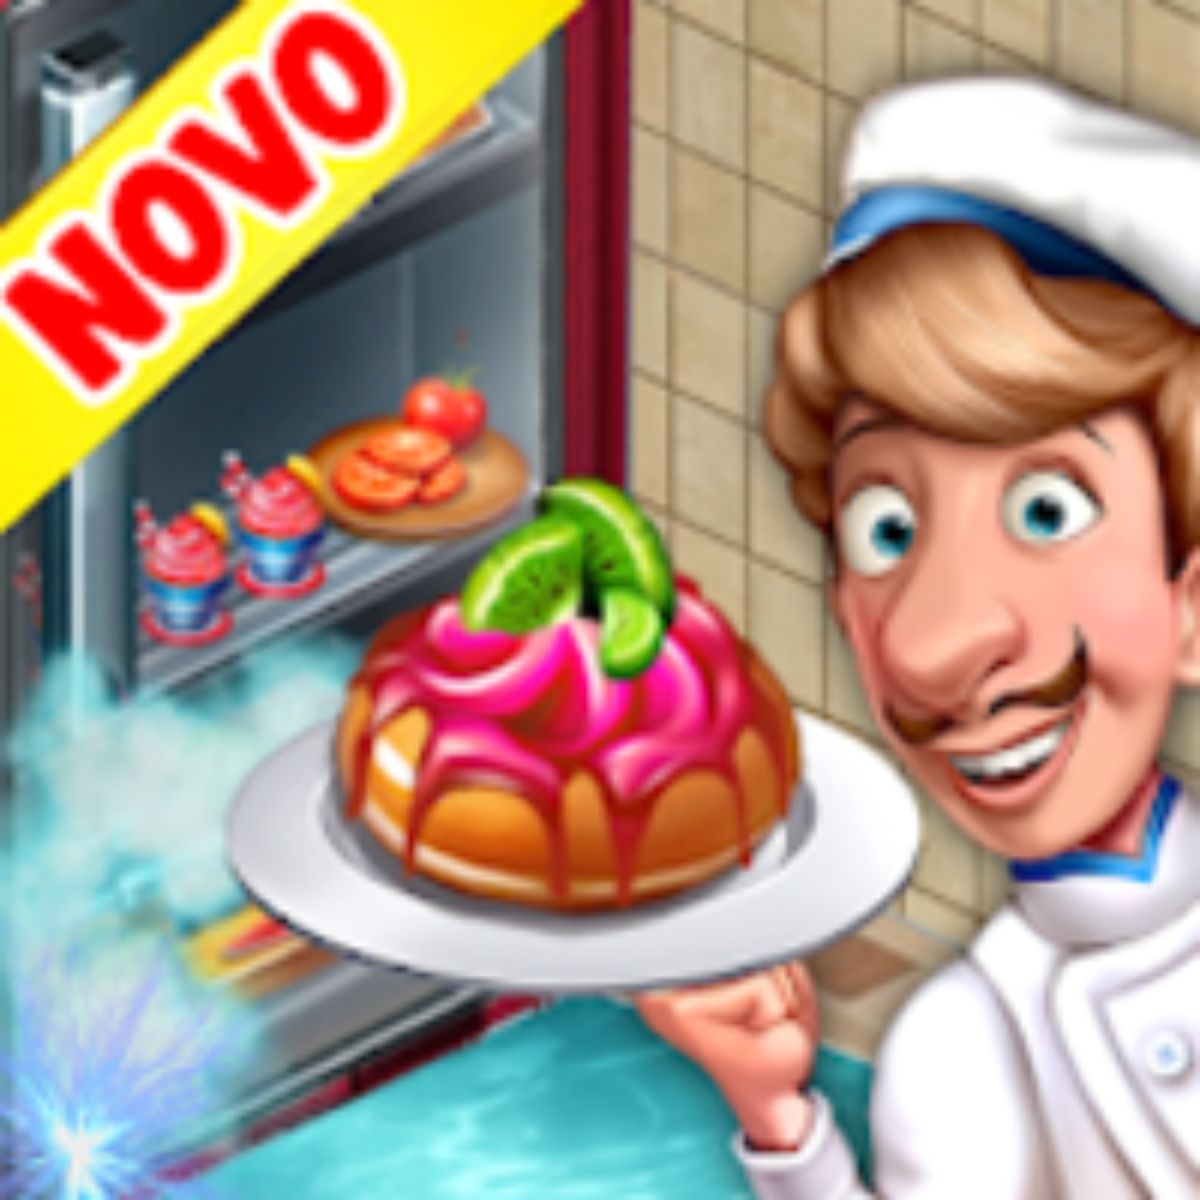 Cooking Hot - Um jogo de restaurante muito louco v1.0.46 Apk Mod (Dinheiro  Infinito) Download 2023 - Night Wolf Apk